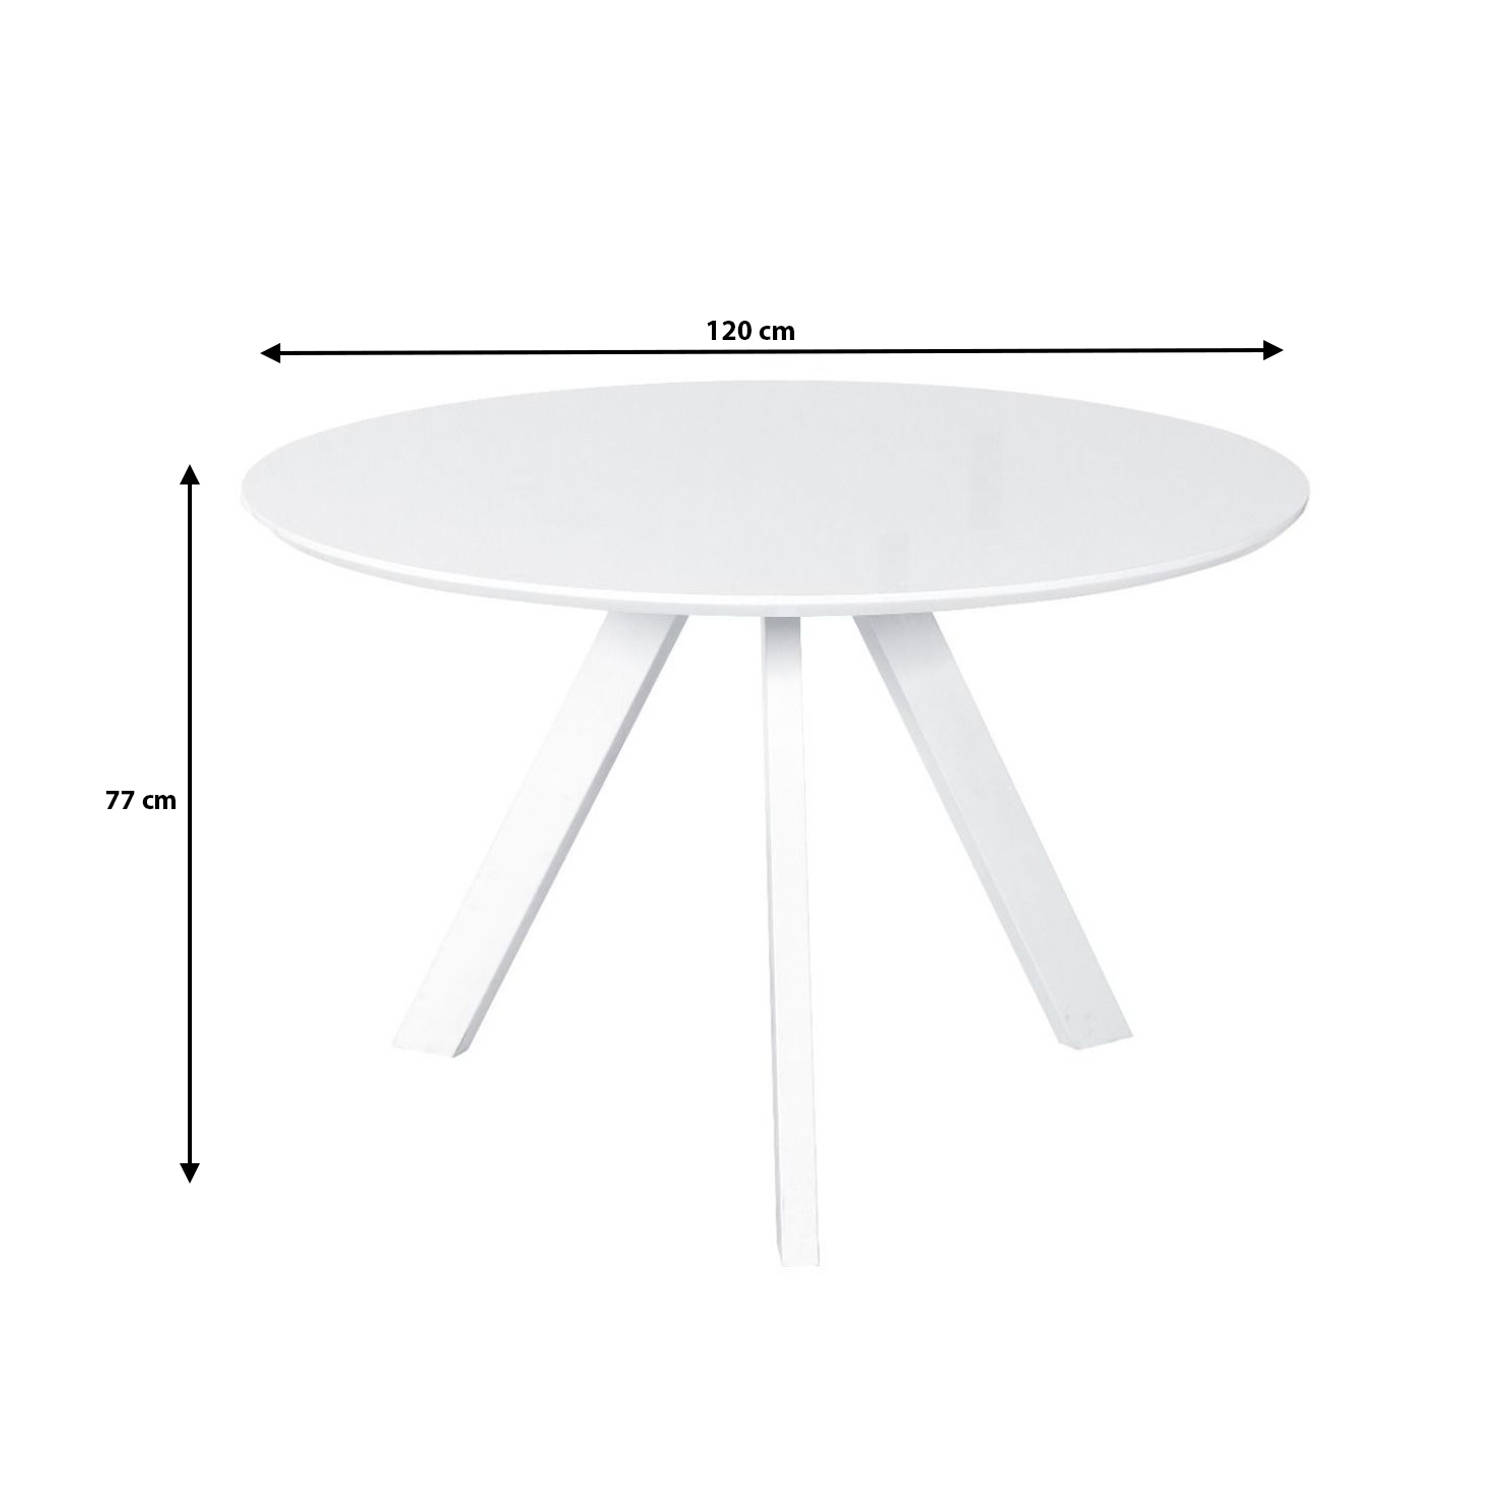 Eettafel Ronsi 120cm ronde eettafel | Blokker